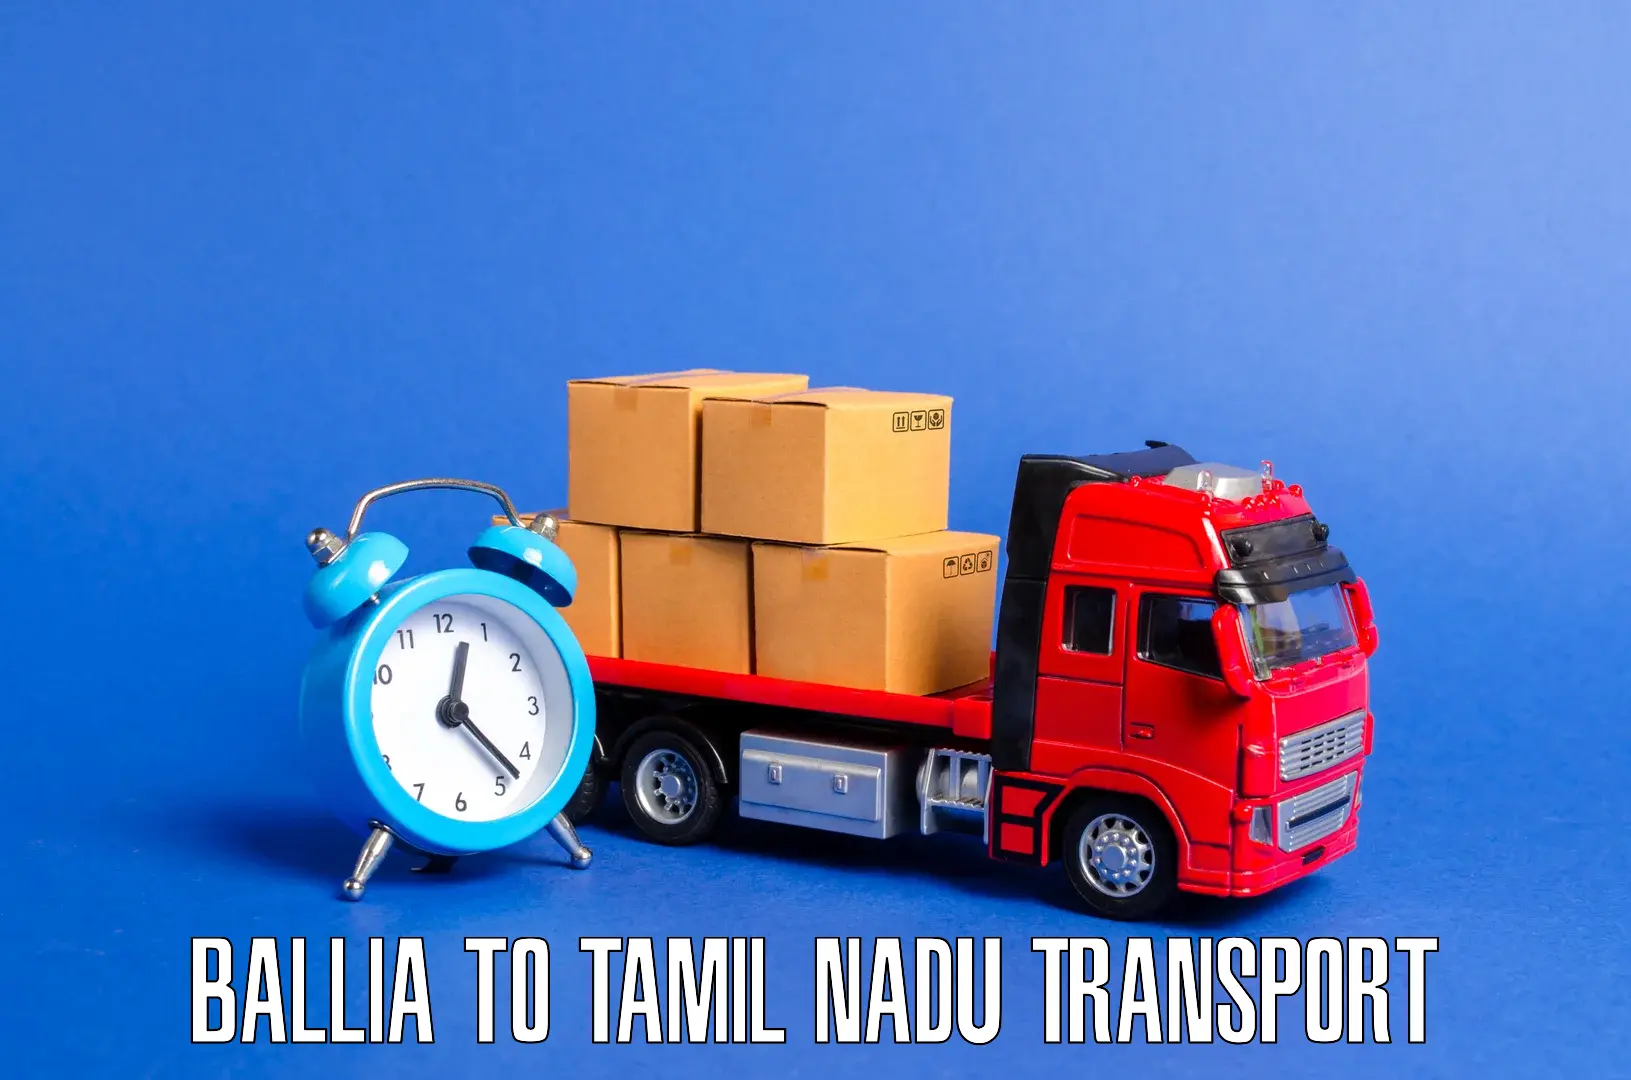 Land transport services Ballia to Thanjavur